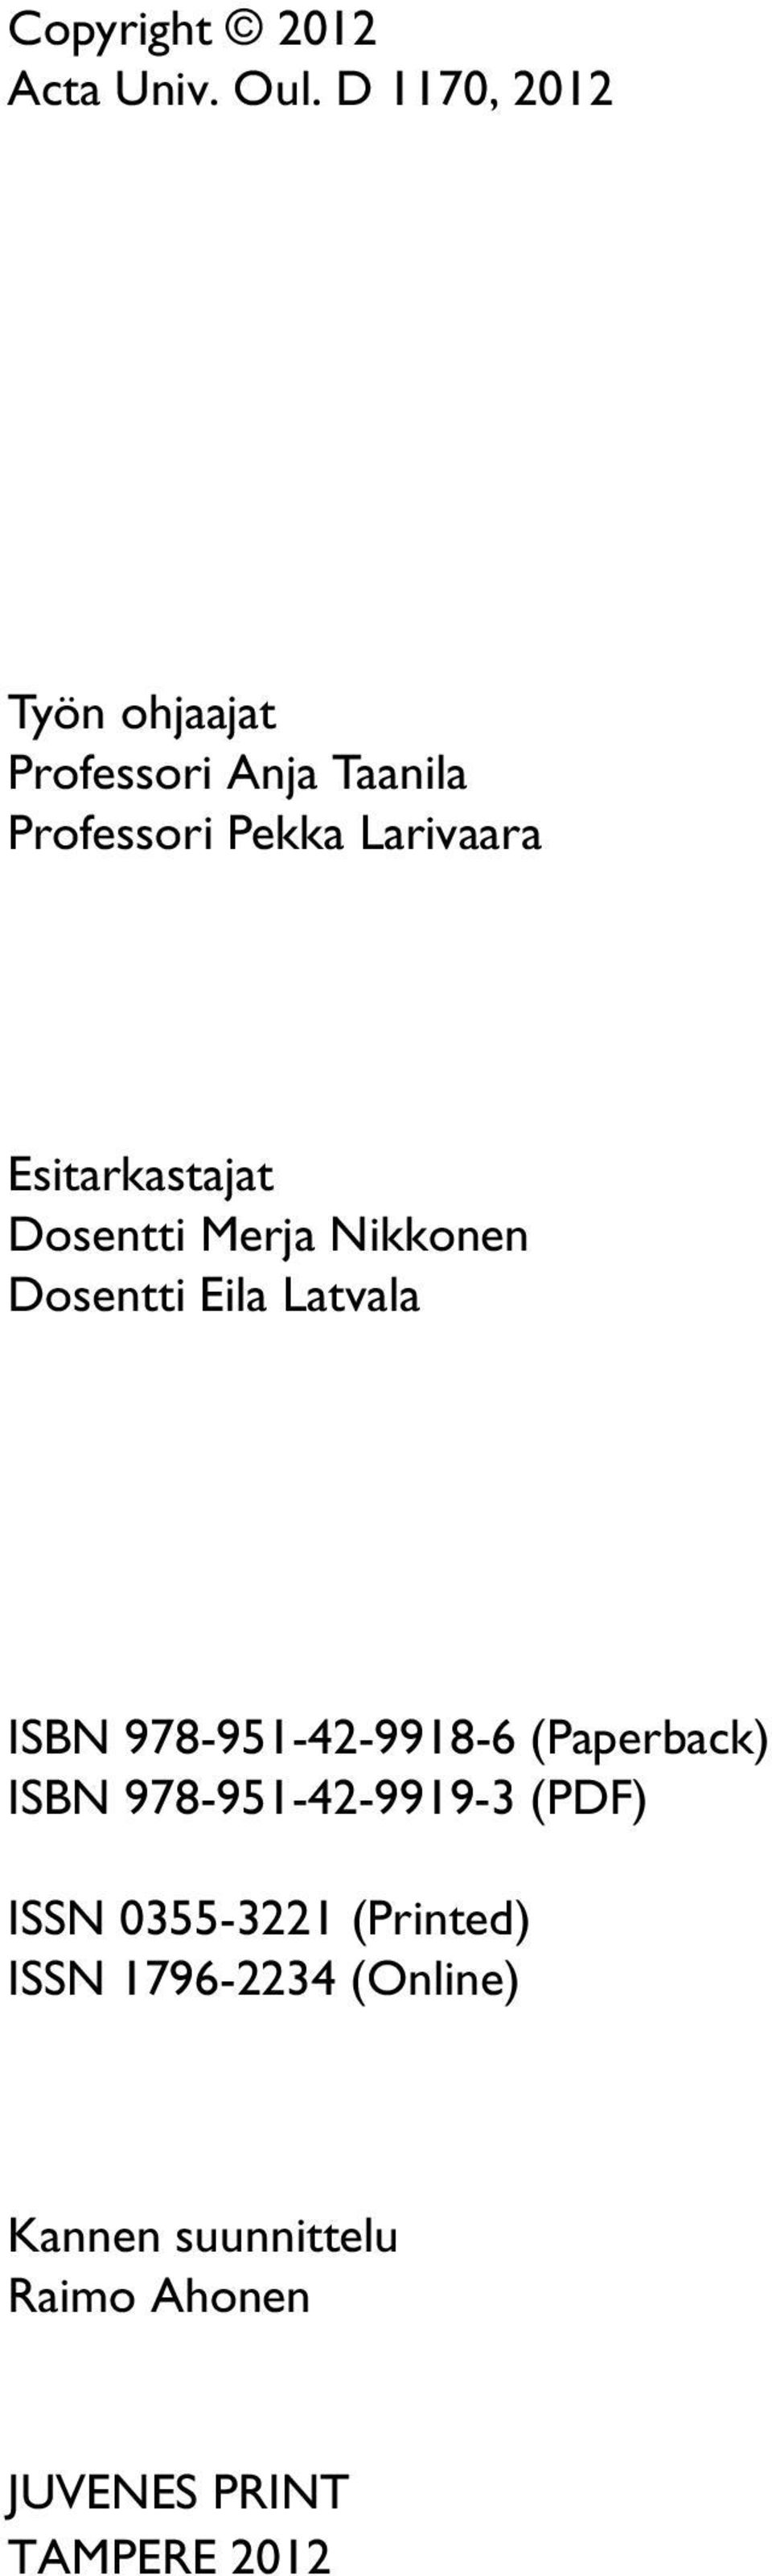 Esitarkastajat Dosentti Merja Nikkonen Dosentti Eila Latvala ISBN 978-951-42-9918-6